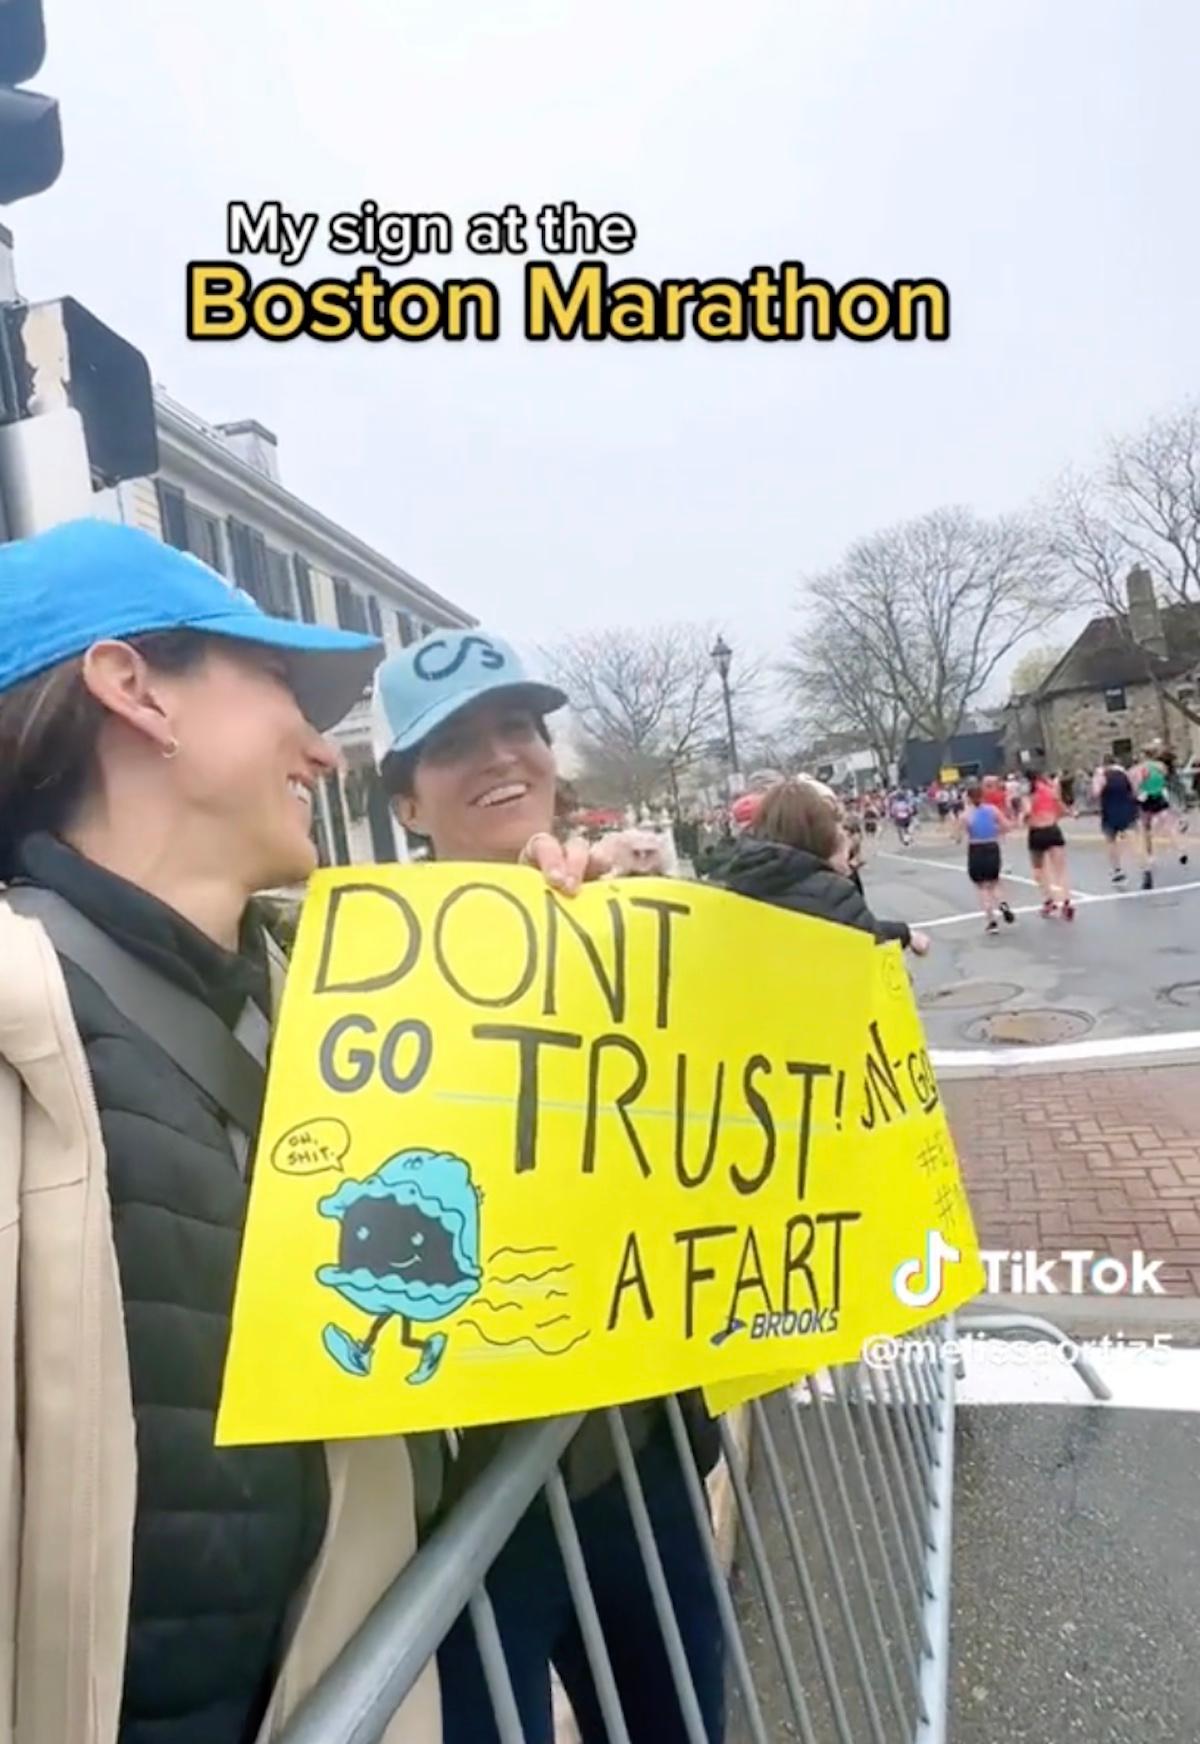 と書かれた看板を持っている女性 "おならを信用しないで" マラソンで